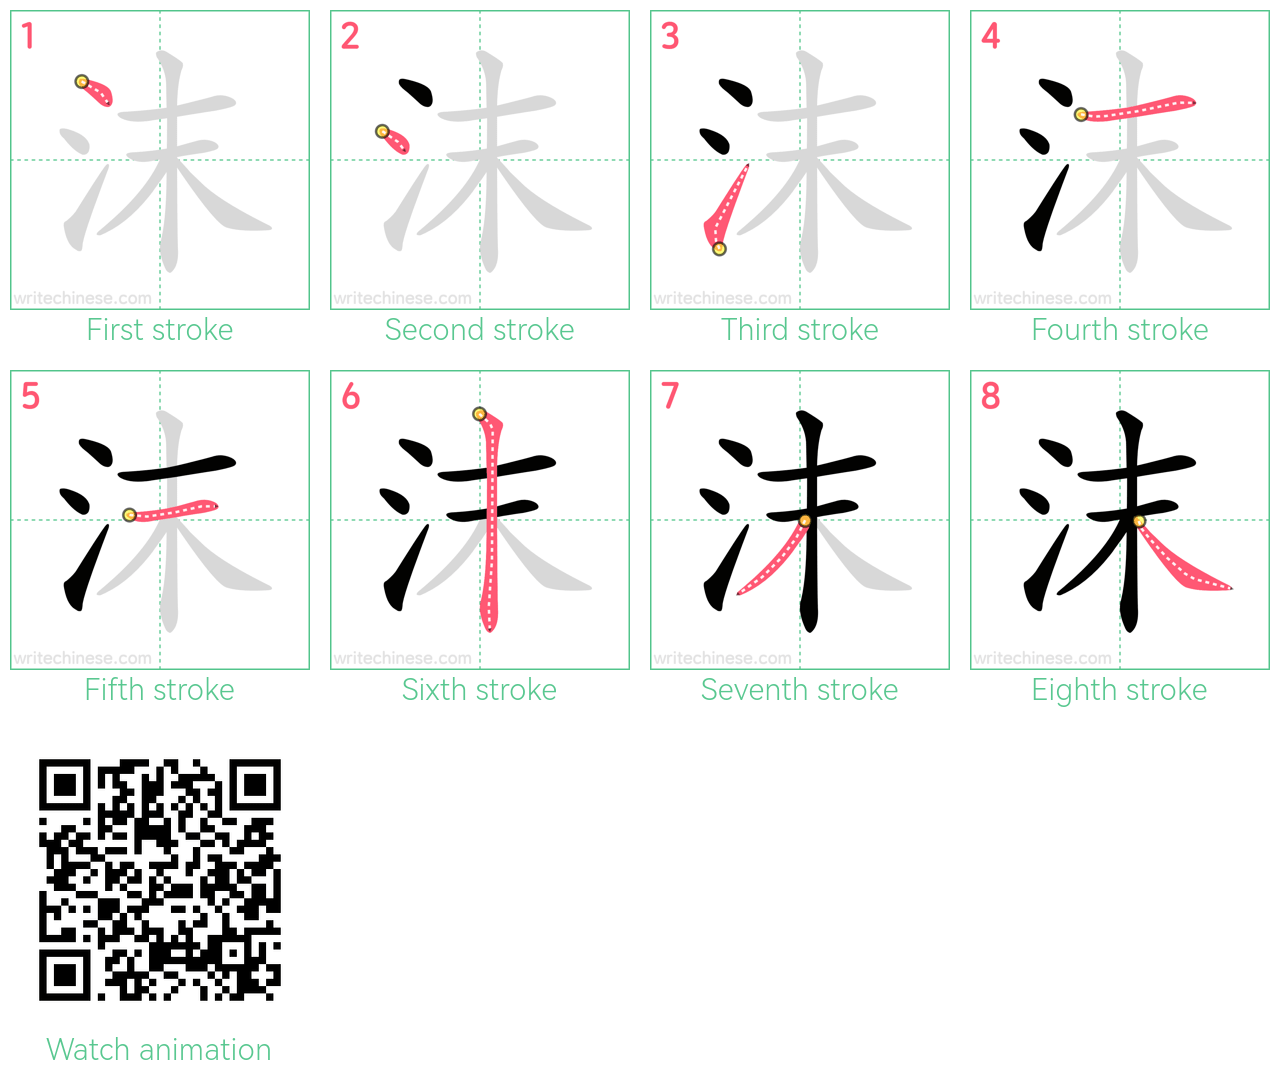 沫 step-by-step stroke order diagrams